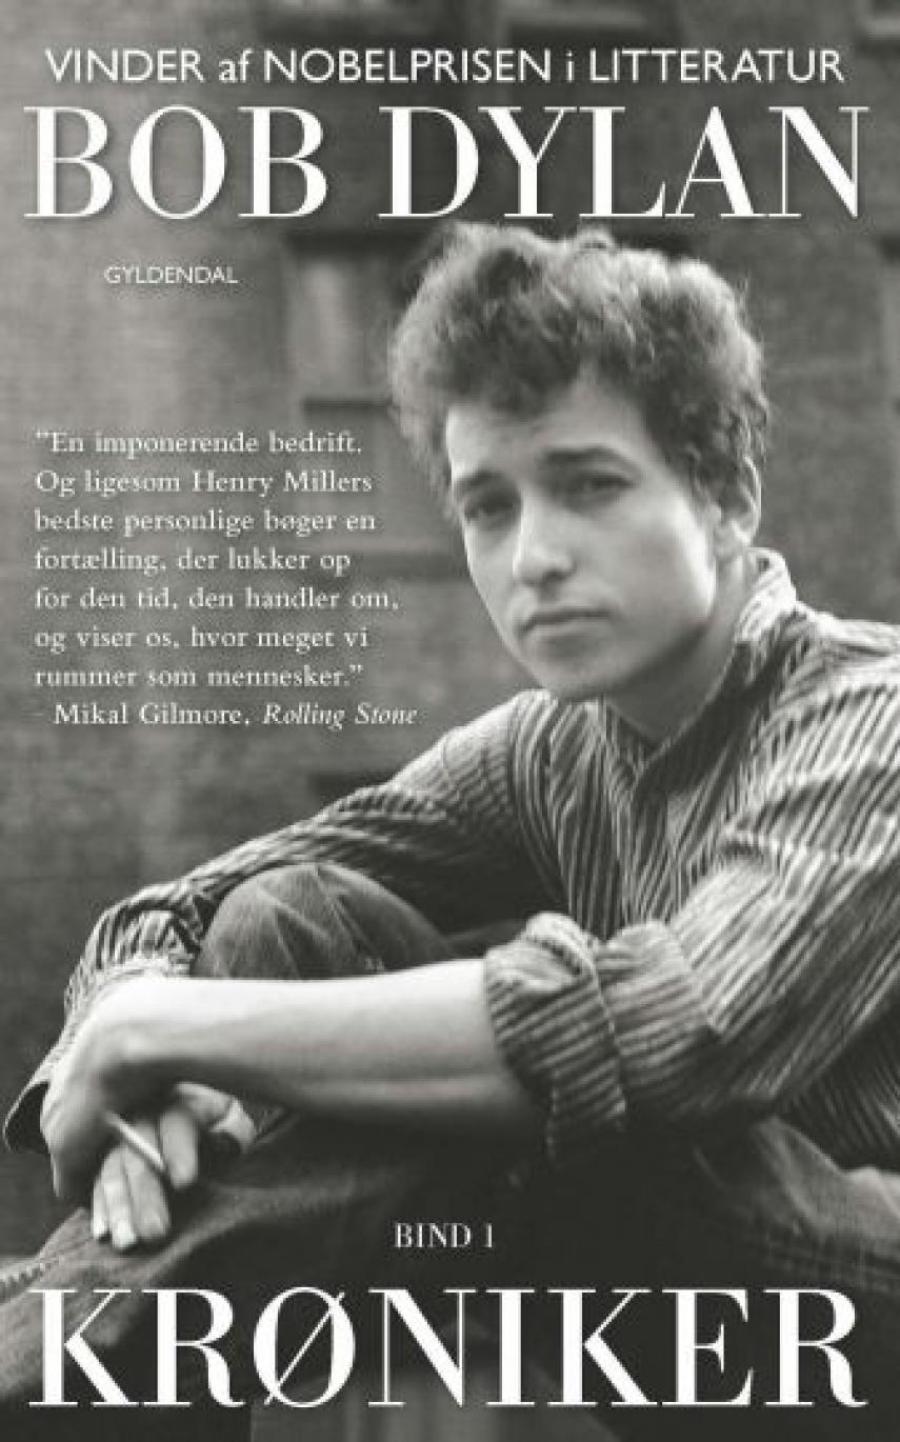 Forside af bogen Krøniker skrevet af Bob Dylan